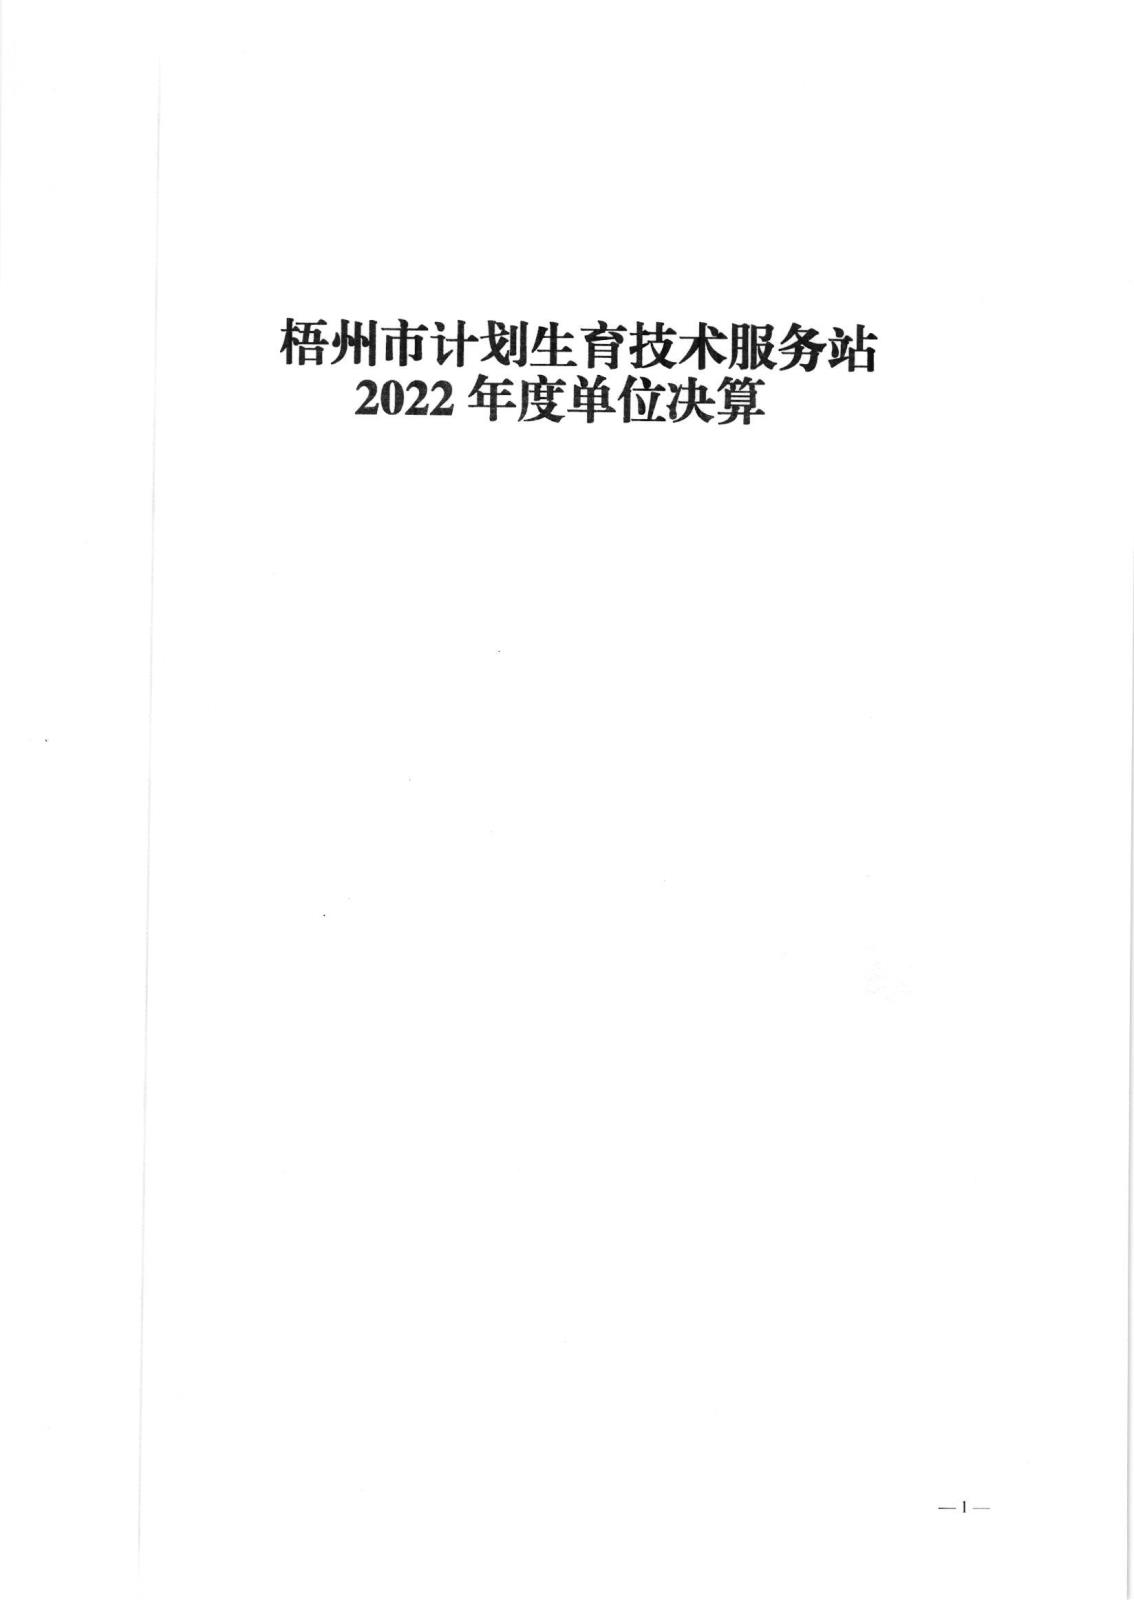 梧州市计划生育技术服务站2022年度单位决算公开报告_00.jpg